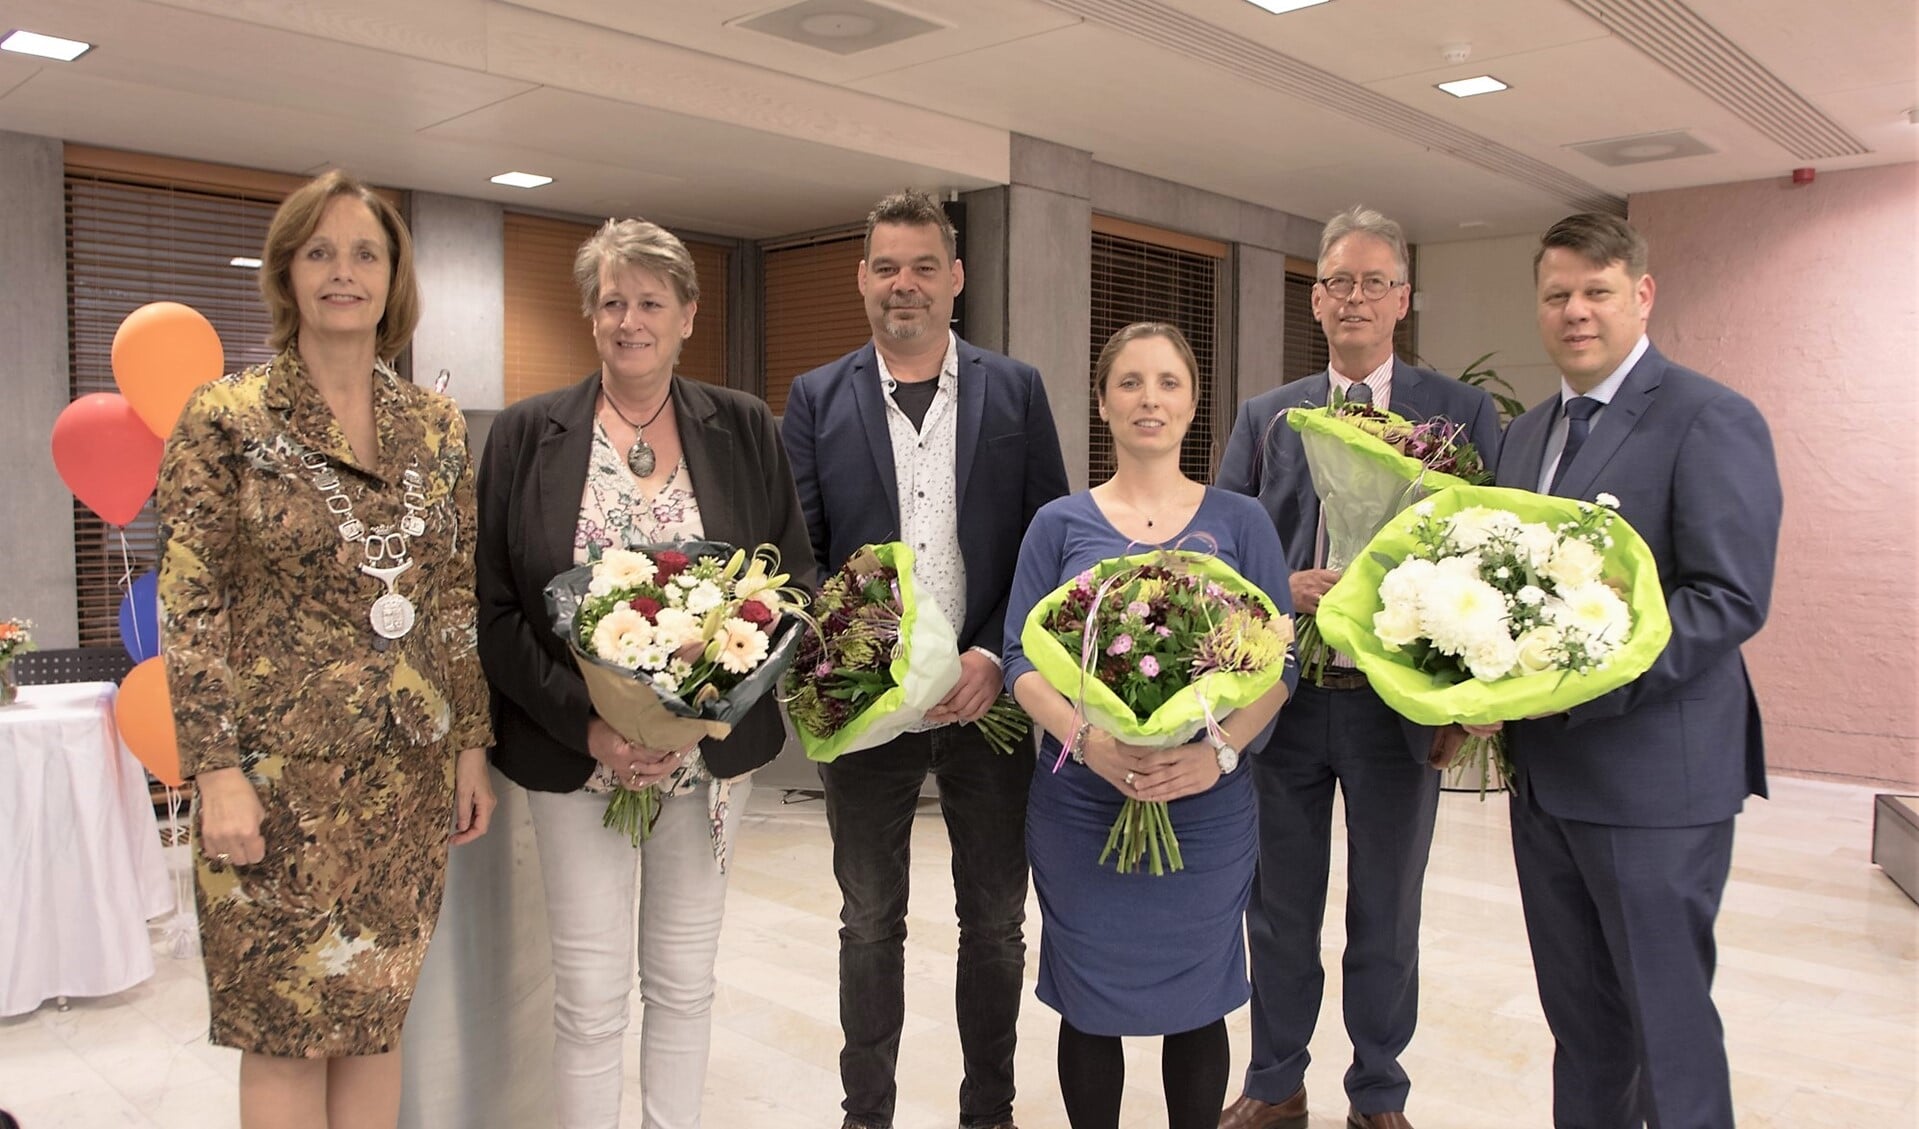 De nieuwe raadsleden, naast de burgemeester, v.l.n.r. Marjan Peelen, Ronald van Spronsen, Karen de Graaf - van Lith, Klaas Kamphuis en Ed Weeder